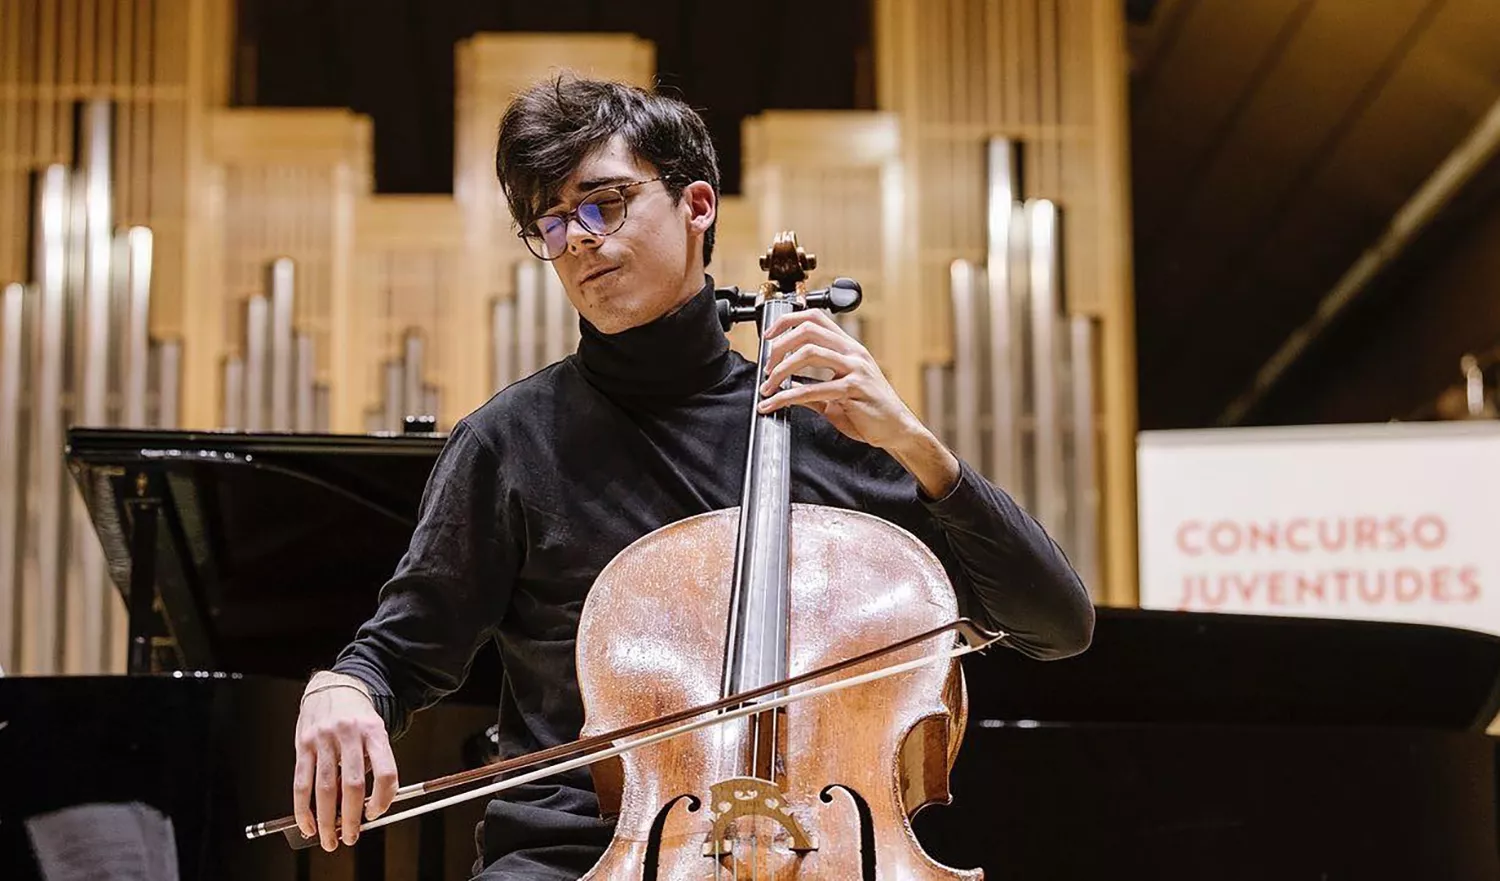 Concierto sobre la historia del violonchelo en el Conservatorio Cristóbal Halffter de Ponferrada